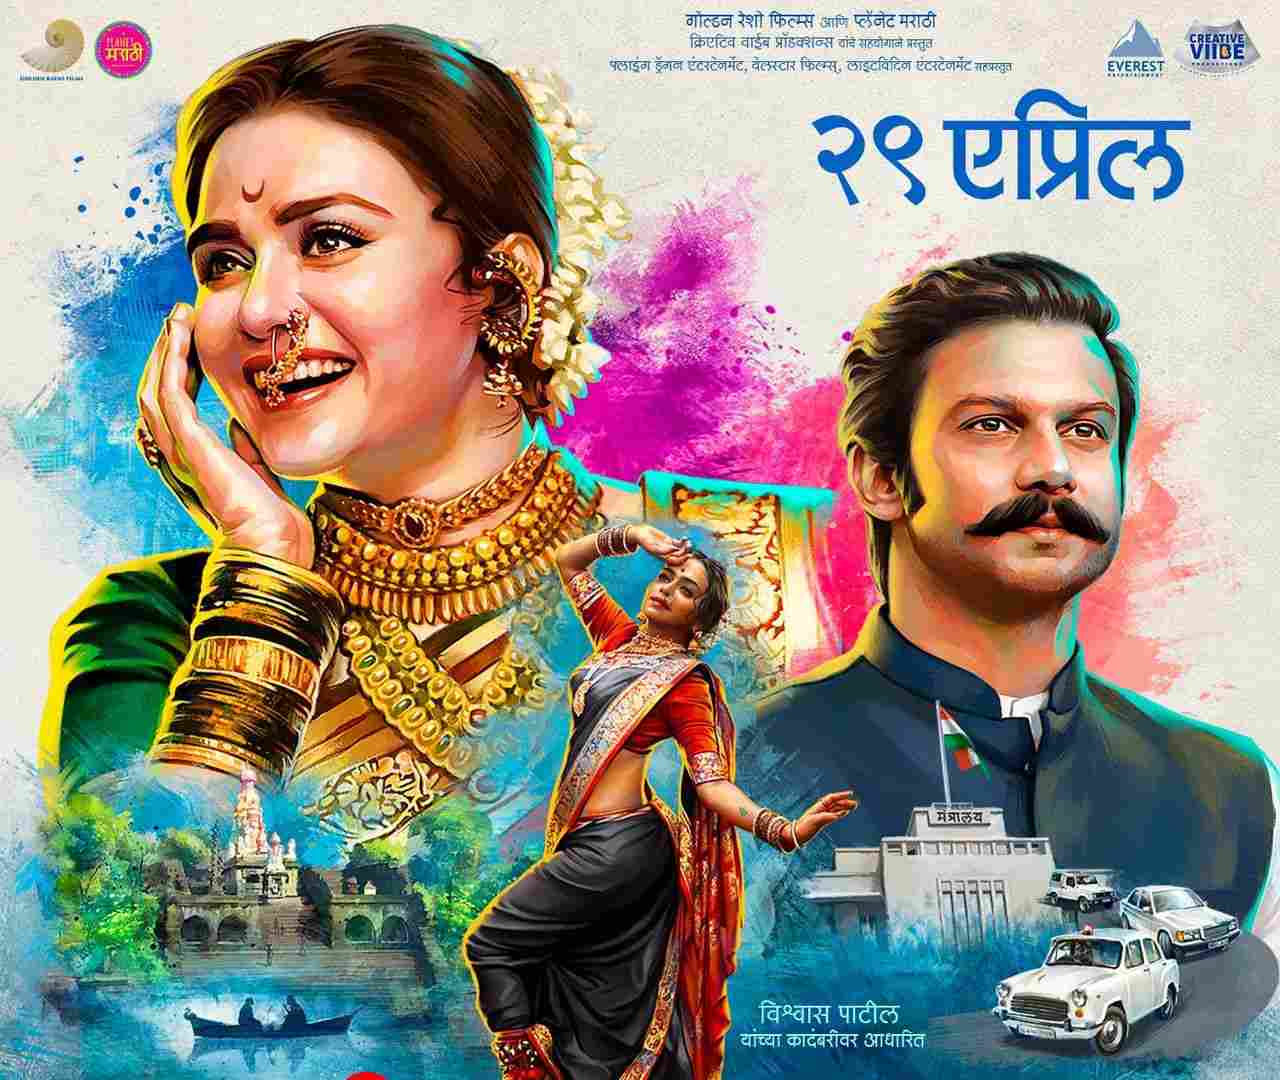 Trailer of 'Chandramukhi' released on social media